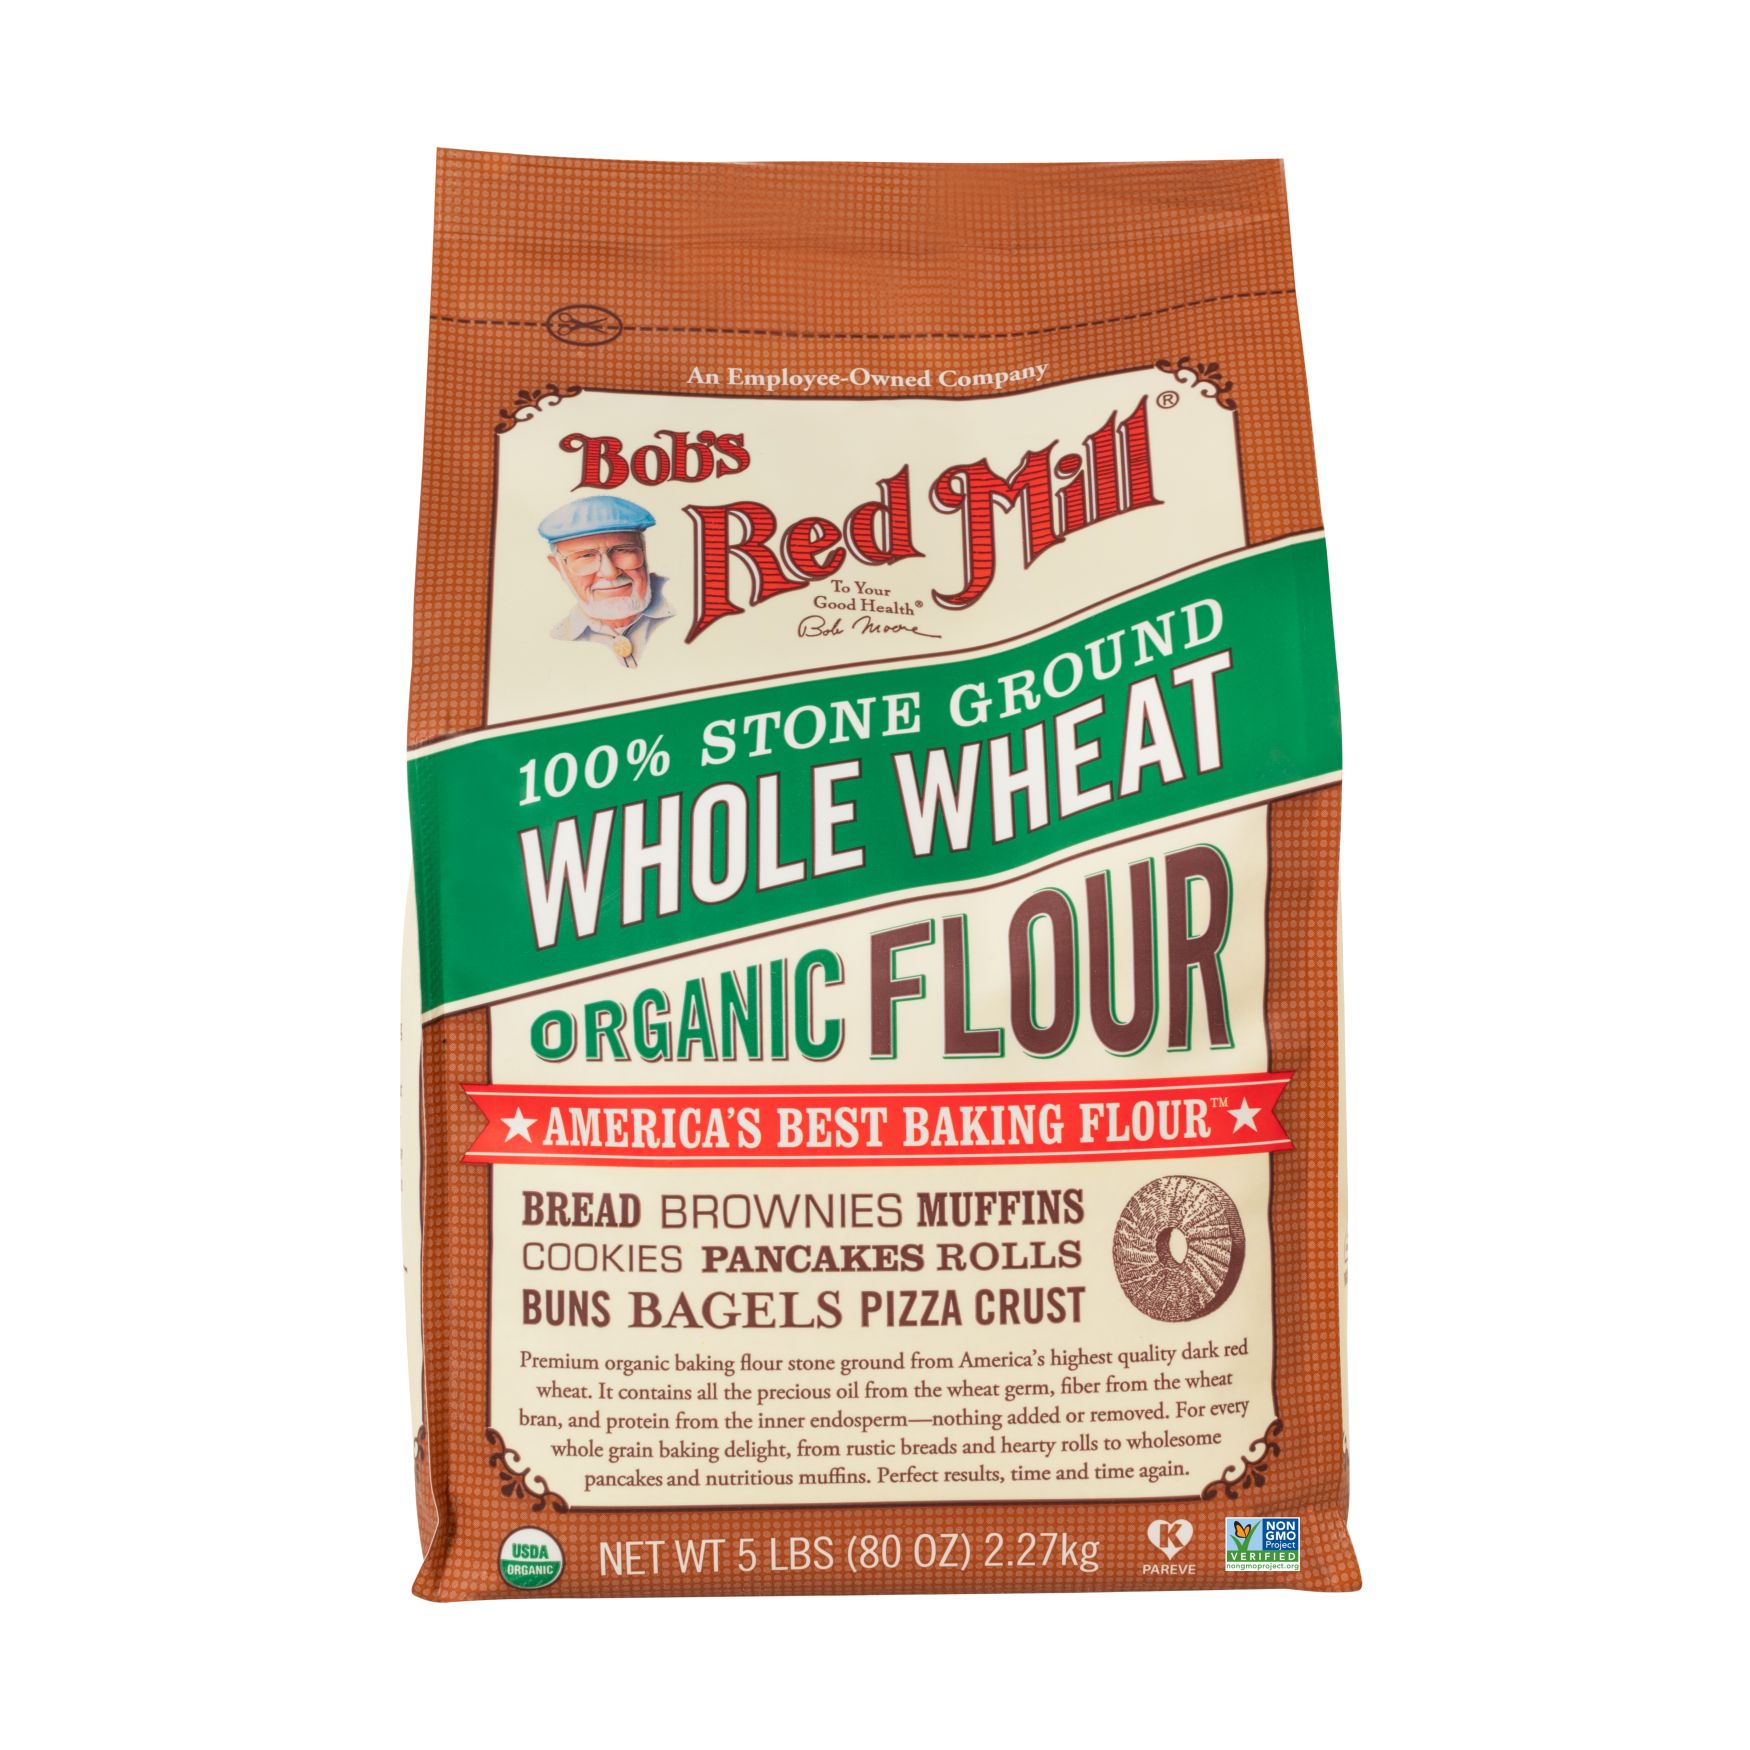 Better Batter - Gluten Free All Purpose Flour - 5 lb.